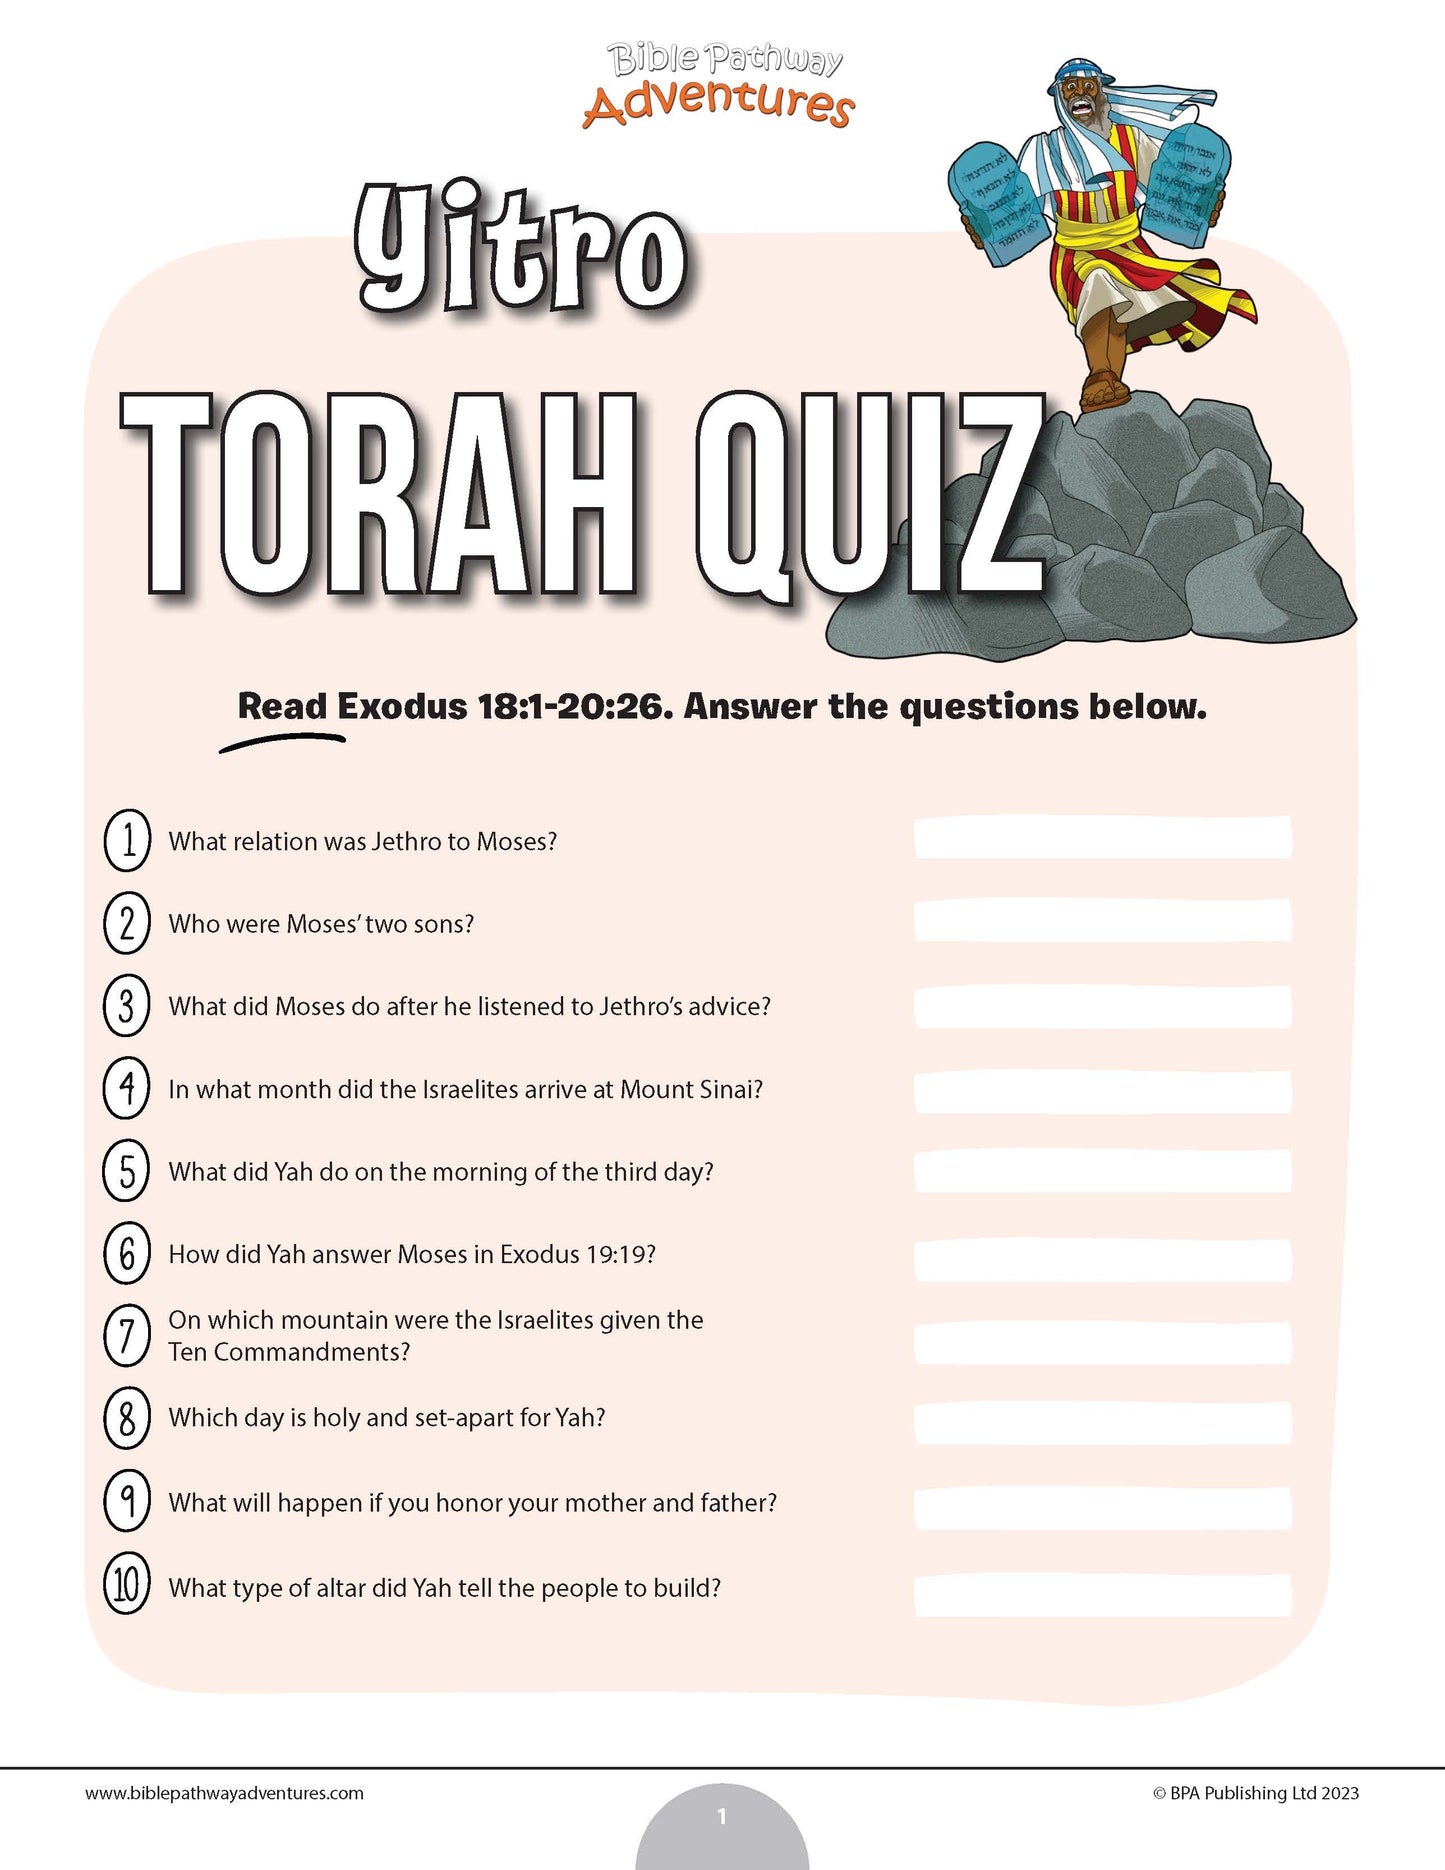 Yitro Torah quiz